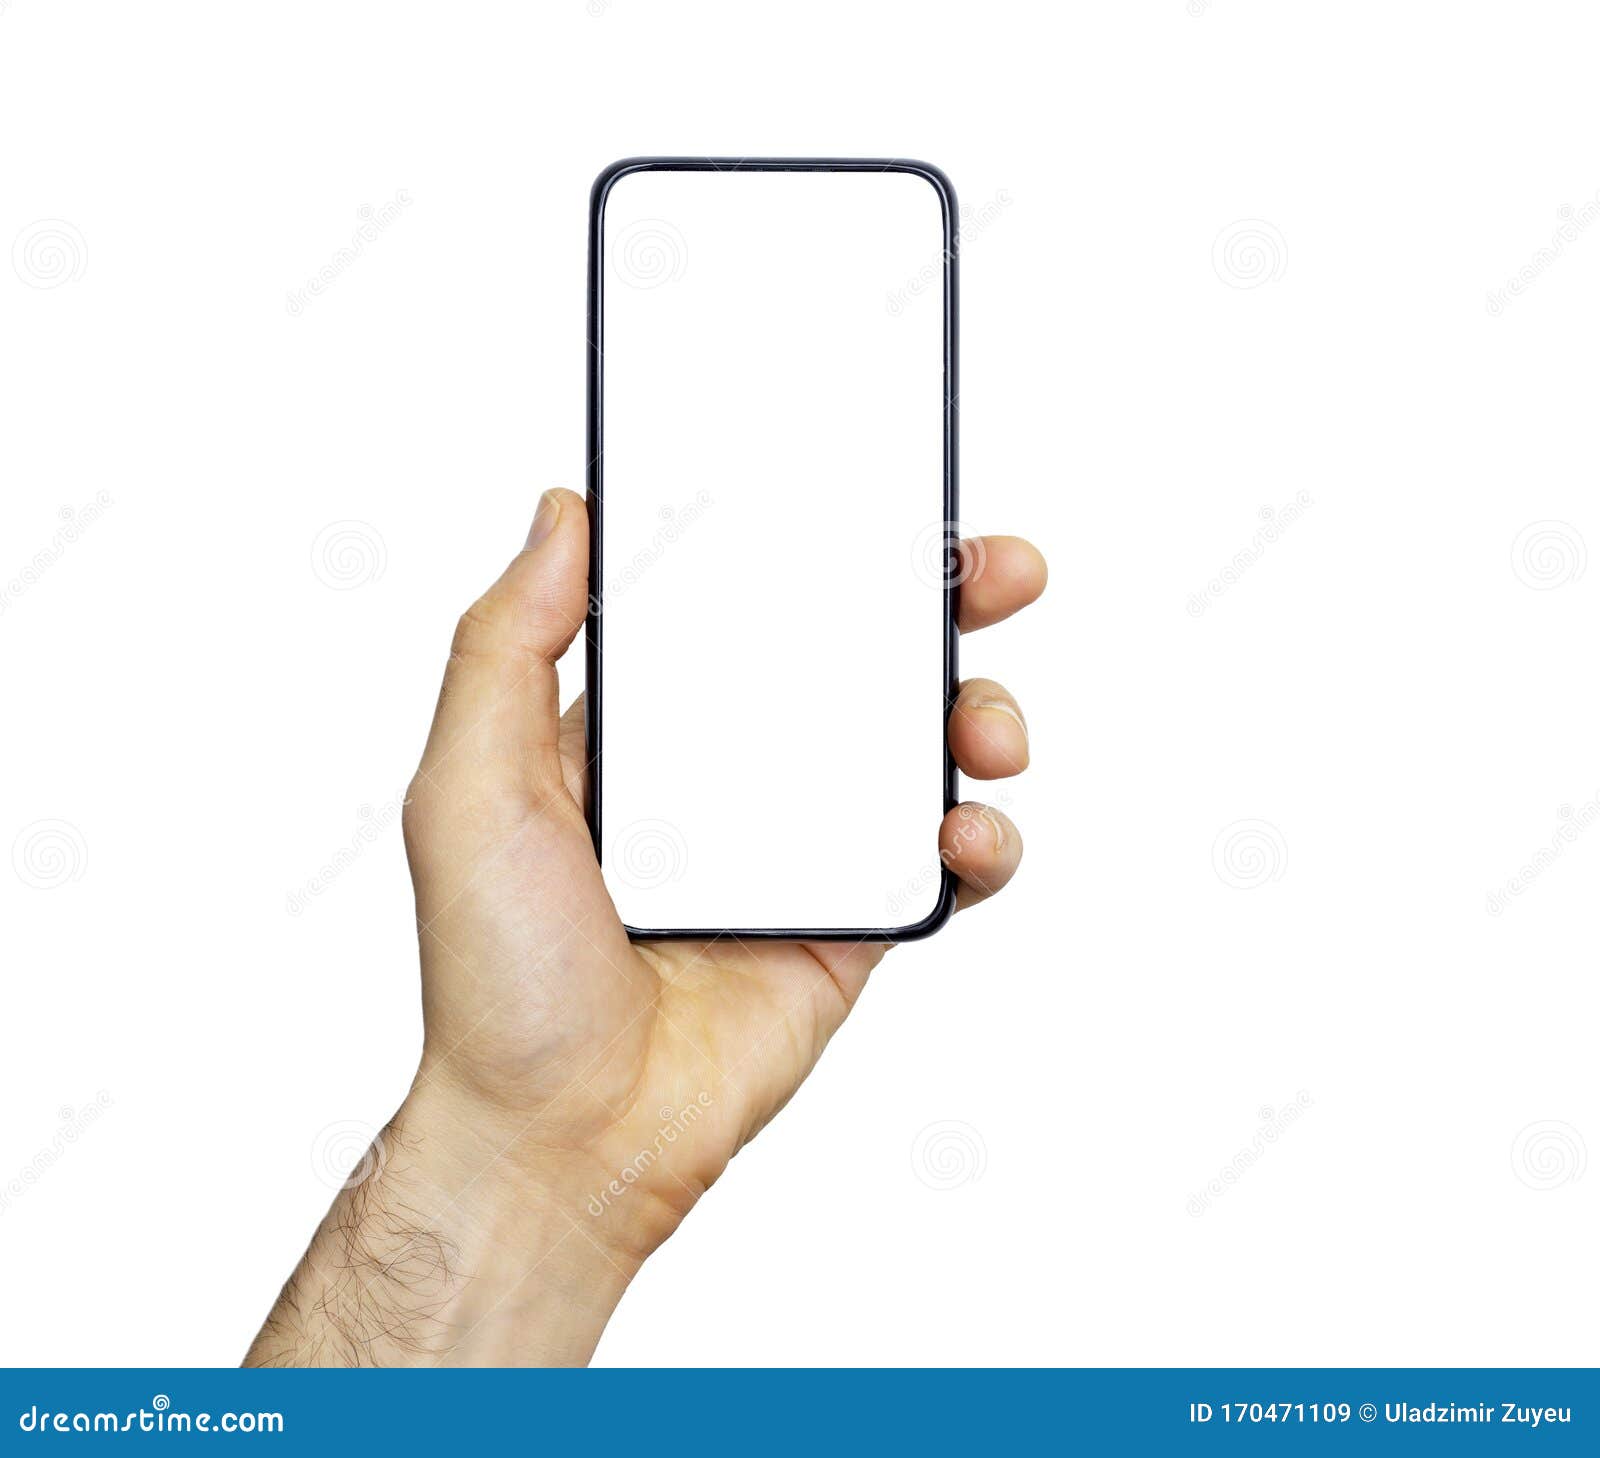 Chiếc điện thoại thông minh trống trên tay cầm tay của bạn sẽ giống như một khảo sát giúp bạn hiểu rõ hơn về chiếc điện thoại của mình. Hãy cùng xem những gì mà màn hình trống này hiện ra để cảm nhận một cách trọn vẹn những tiềm năng mới của chiếc điện thoại thông minh của bạn.